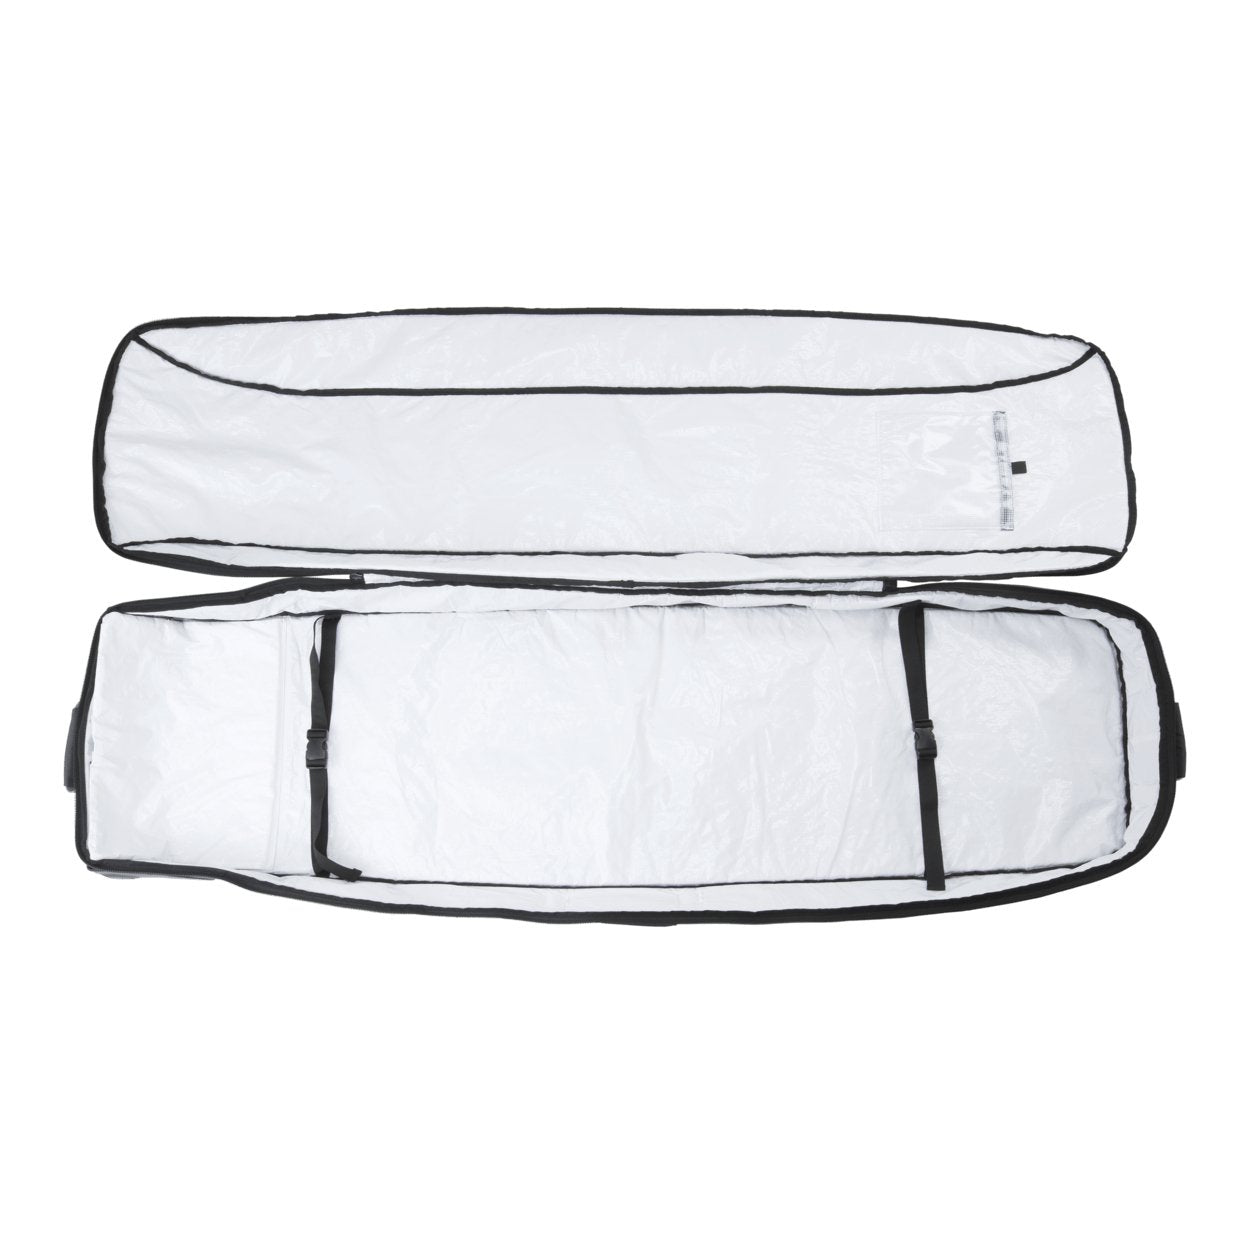 ION Wake Boardbag Core Wheelie 2023 - Worthing Watersports - 9010583127316 - Bags - ION Water